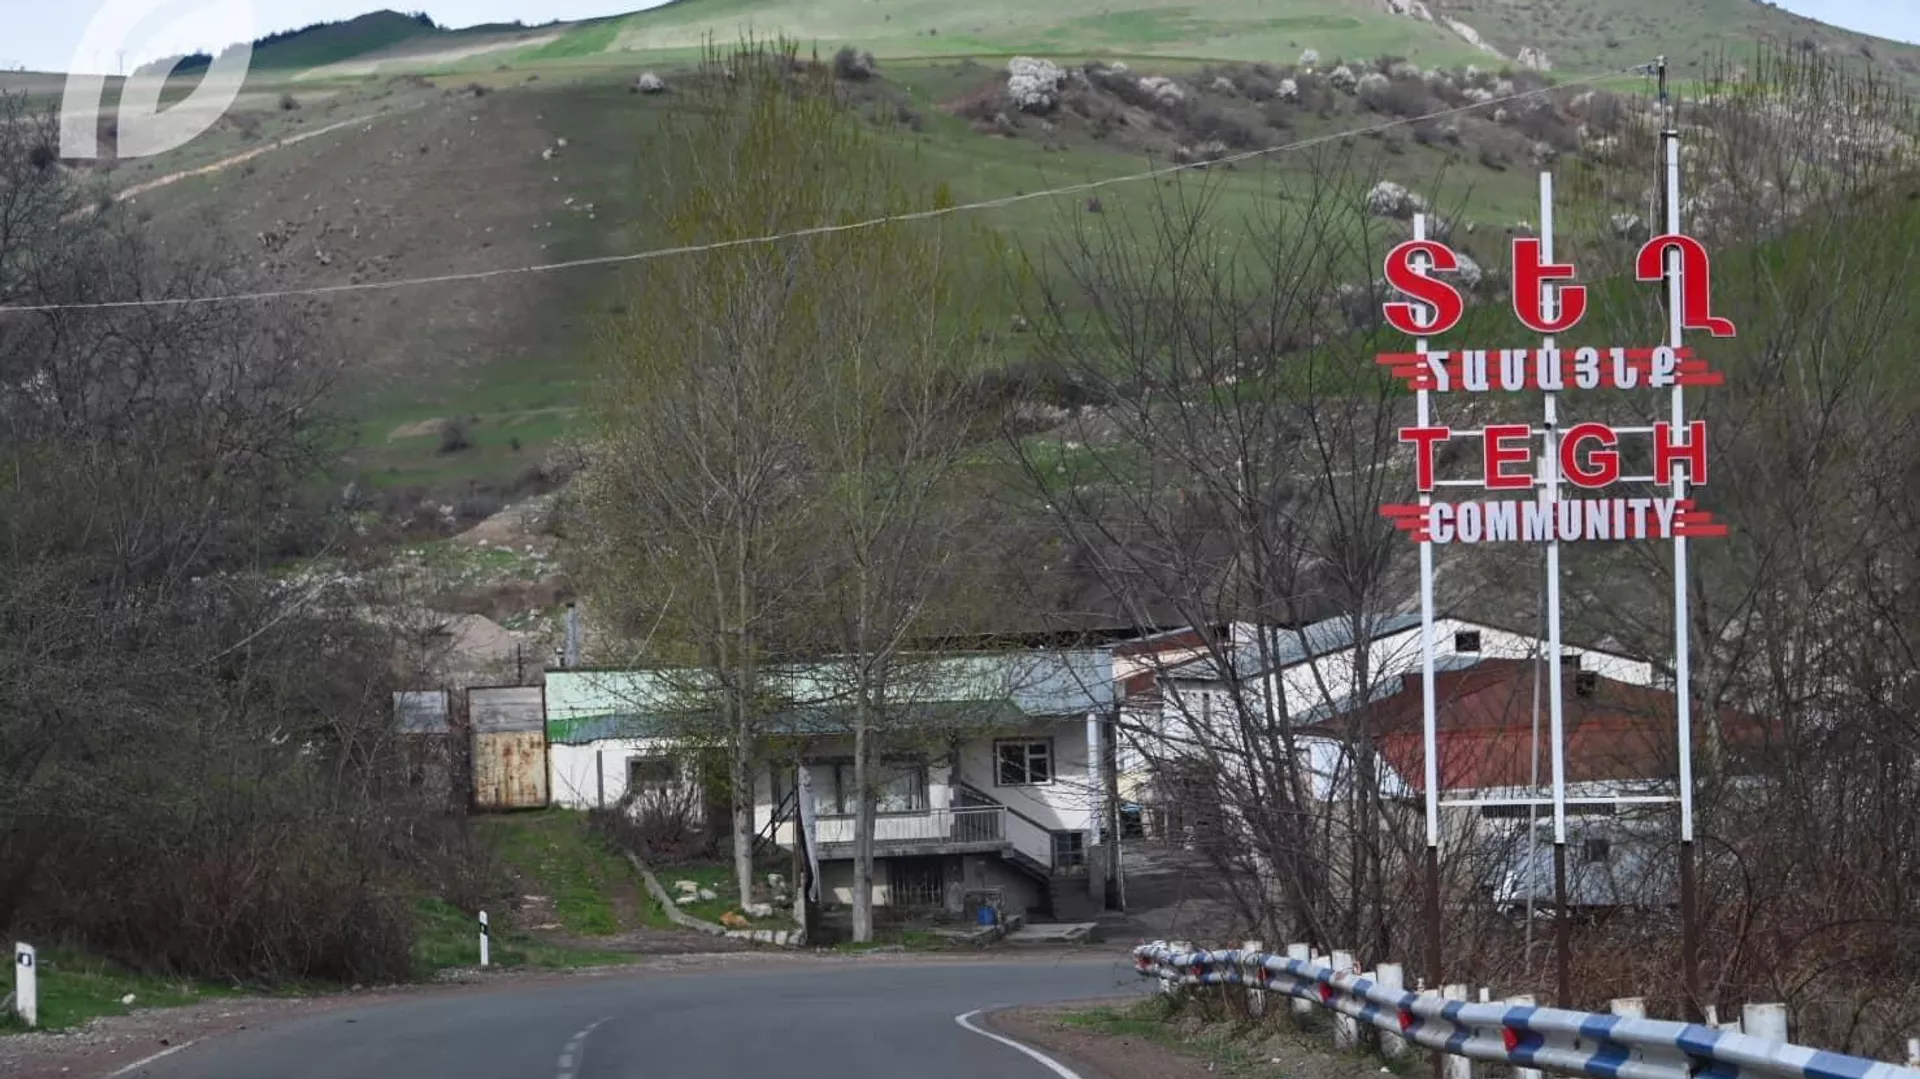 Տեղ գյուղի 50 բնակիչ Ադրբեջանի ԶՈւ–ի պատճառով զրկվել է հողատարածքներից․ Սյունիքի մարզպետ